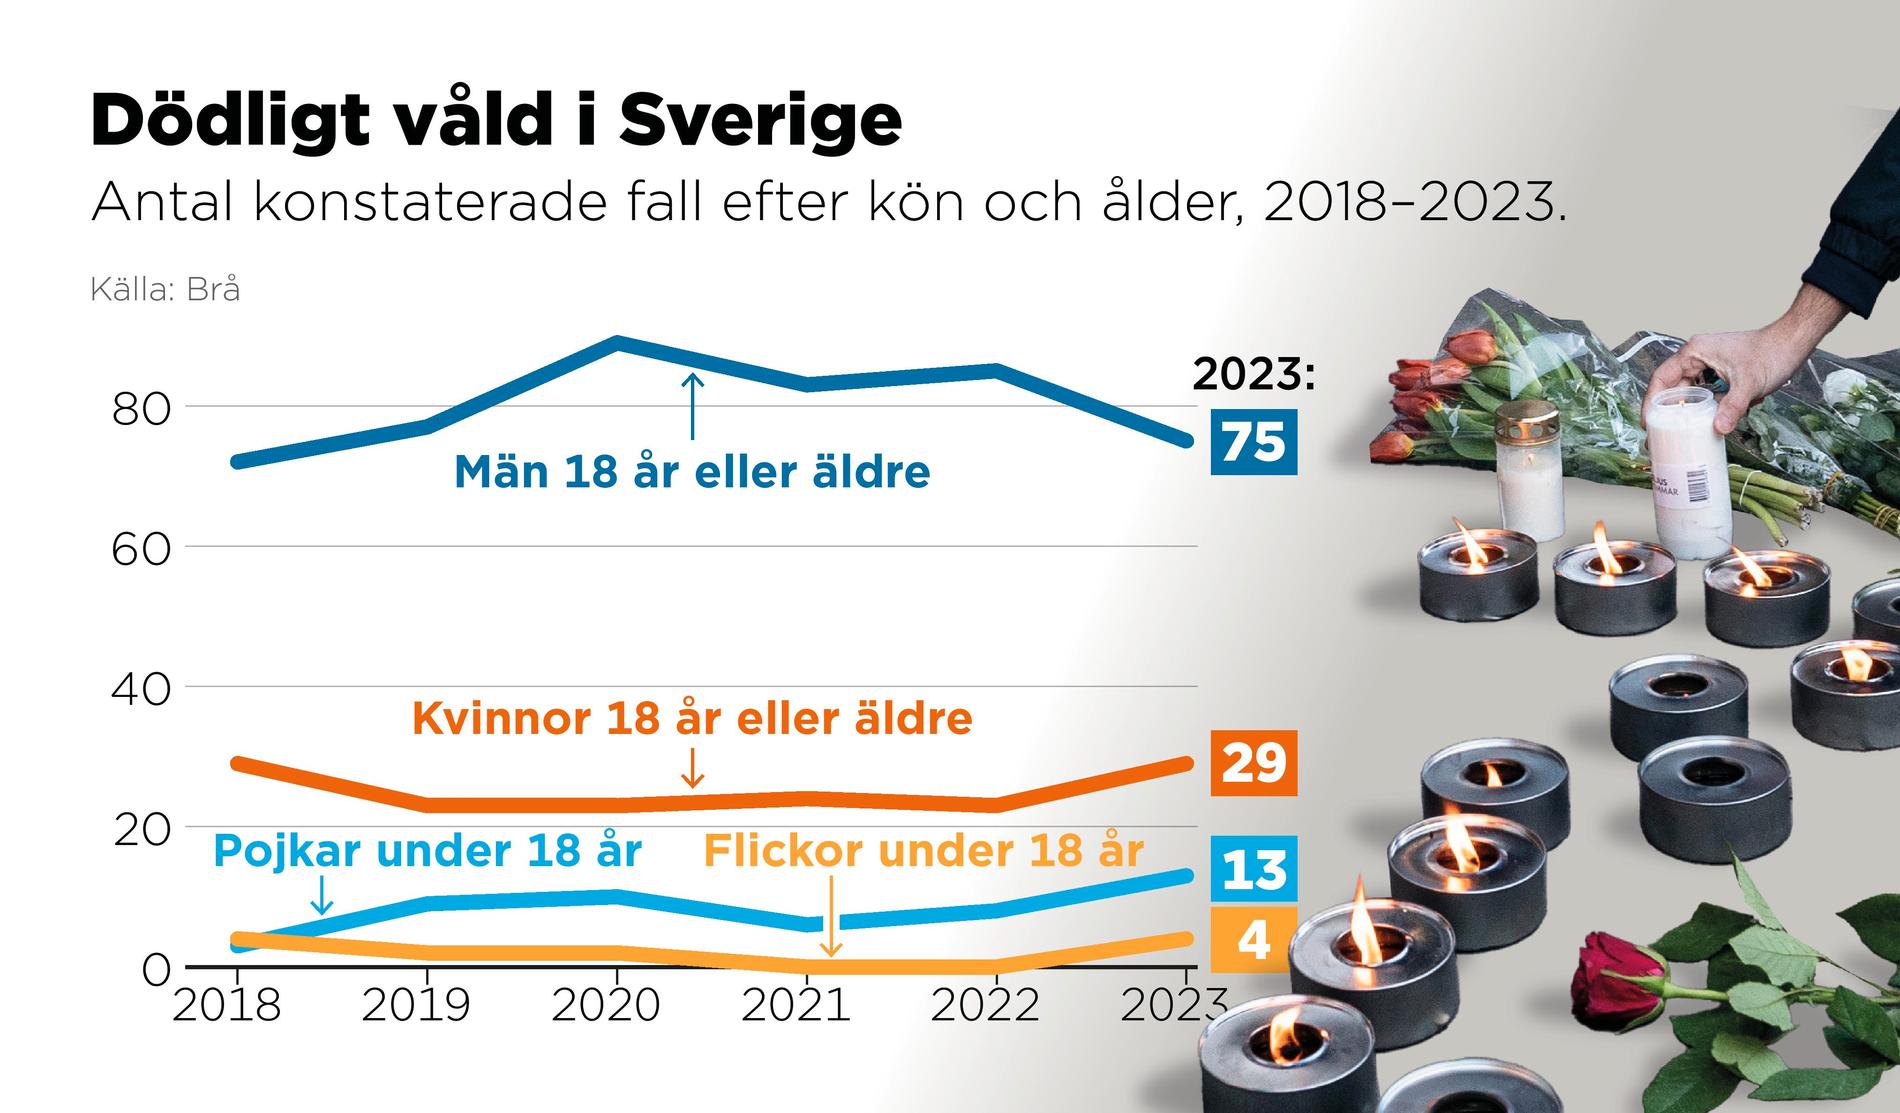 Antal konstaterade fall av dödligt våld i Sverige efter kön och ålder 2018–2023.